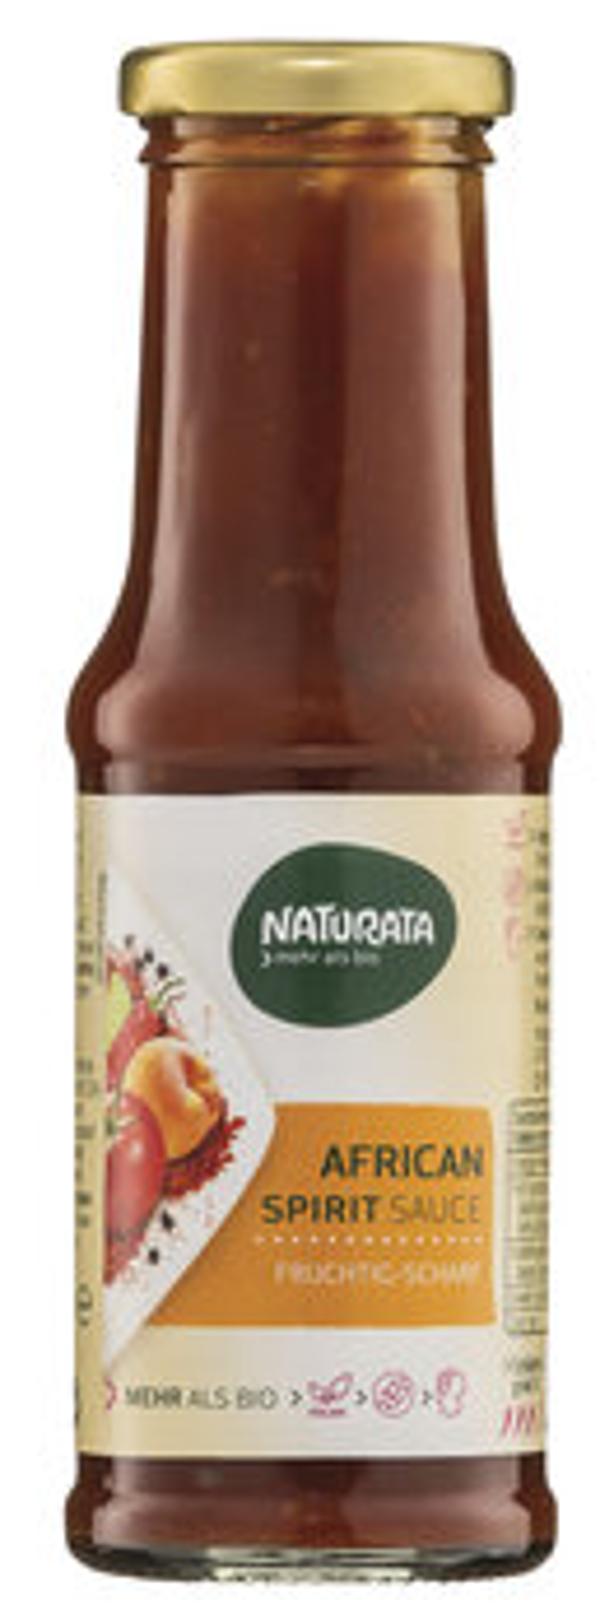 Produktfoto zu African Spirit Sauce, 210 ml